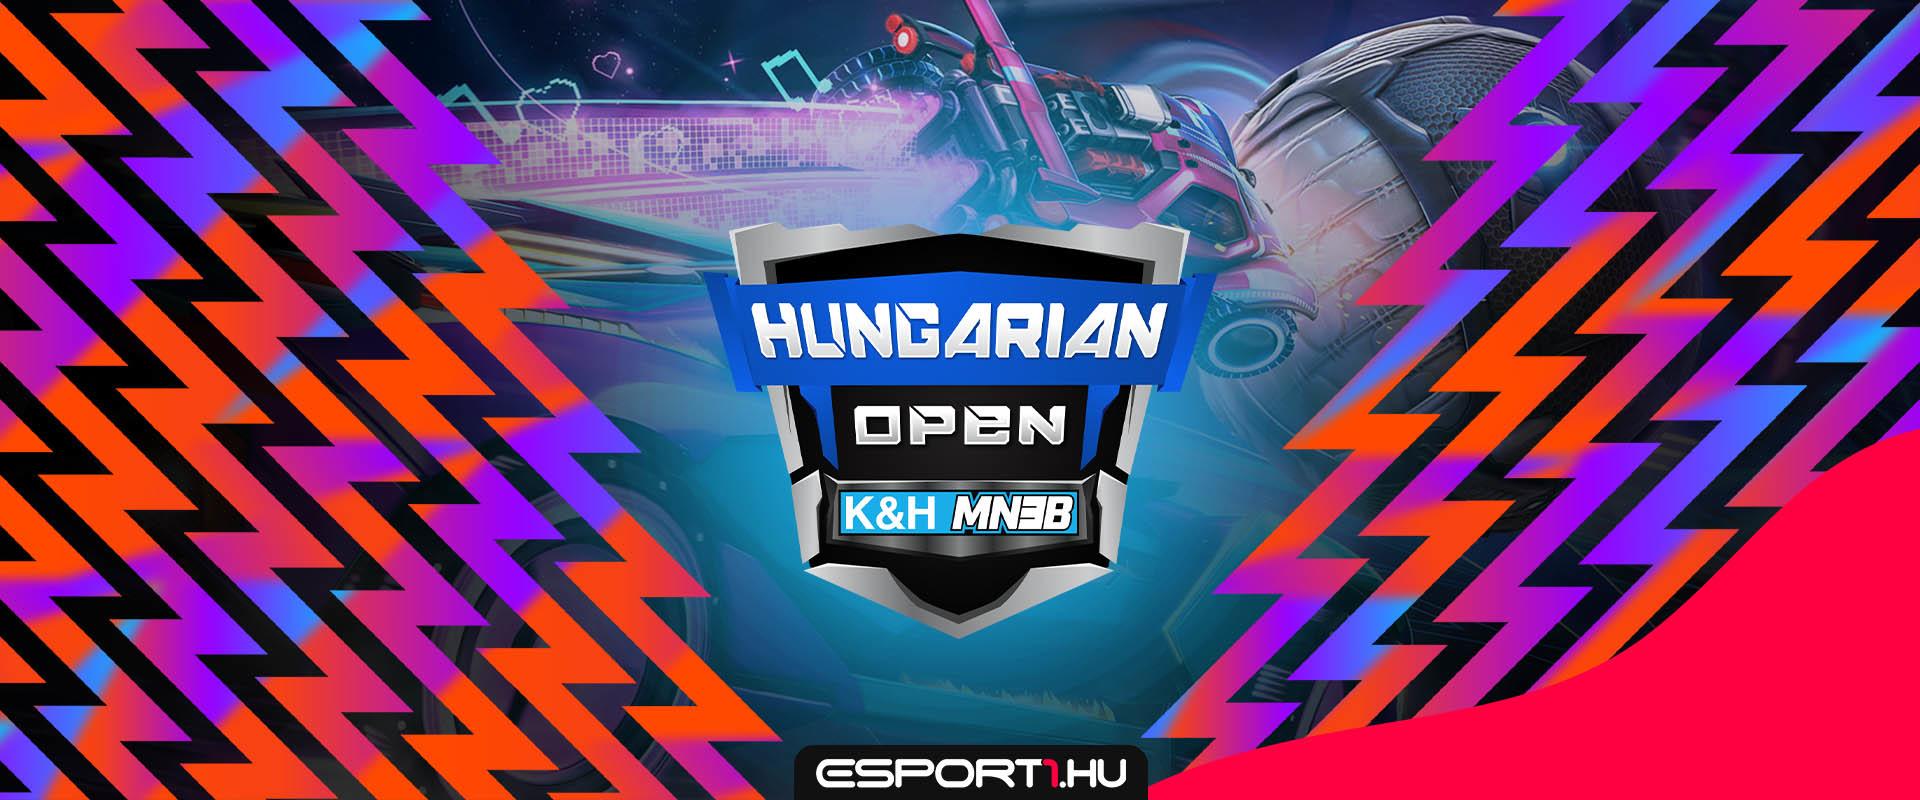 Rocket League versennyel bővül a K&H MN3B, jön a Hungarian Open 3. szezonja